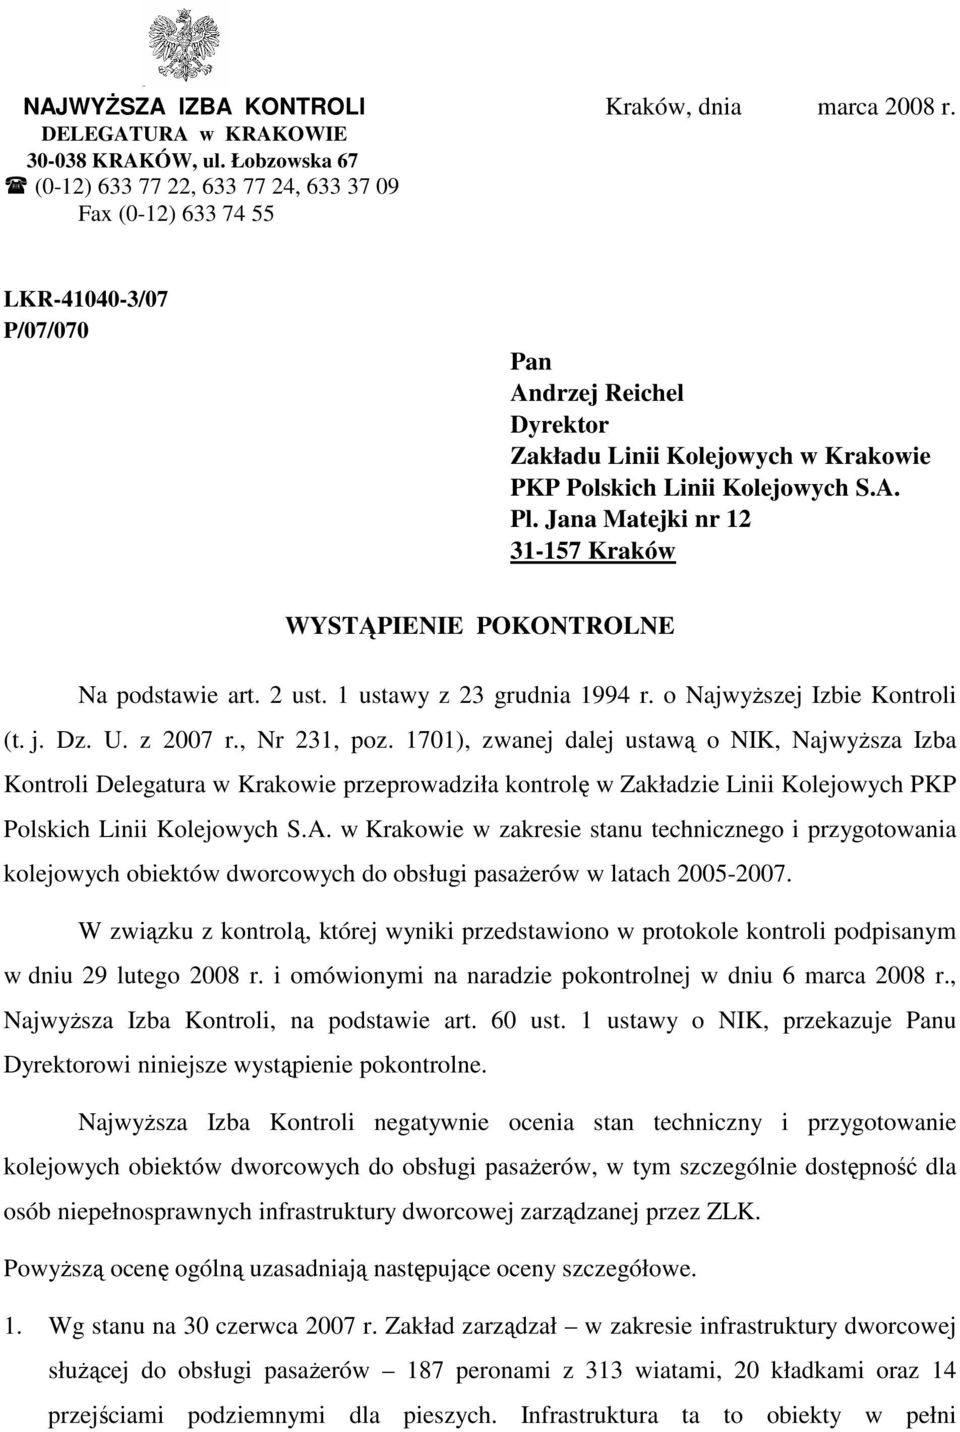 Jana Matejki nr 12 31-157 Kraków WYSTĄPIENIE POKONTROLNE Na podstawie art. 2 ust. 1 ustawy z 23 grudnia 1994 r. o NajwyŜszej Izbie Kontroli (t. j. Dz. U. z 2007 r., Nr 231, poz.